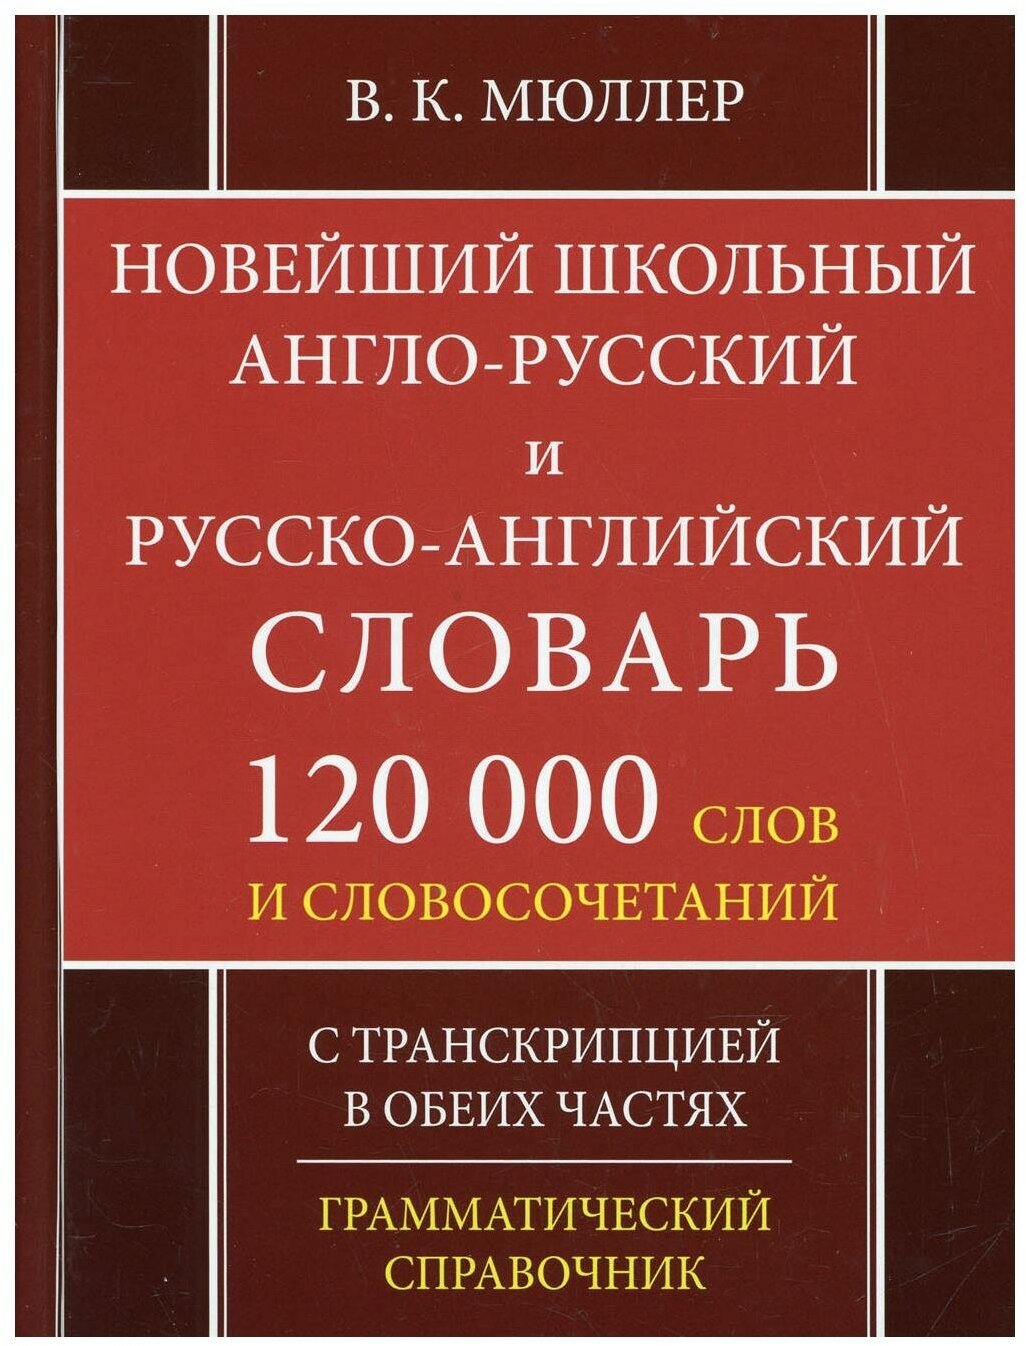 Новейший школьный англо-русский и русско-английский словарь. 120 000 слов - фото №1